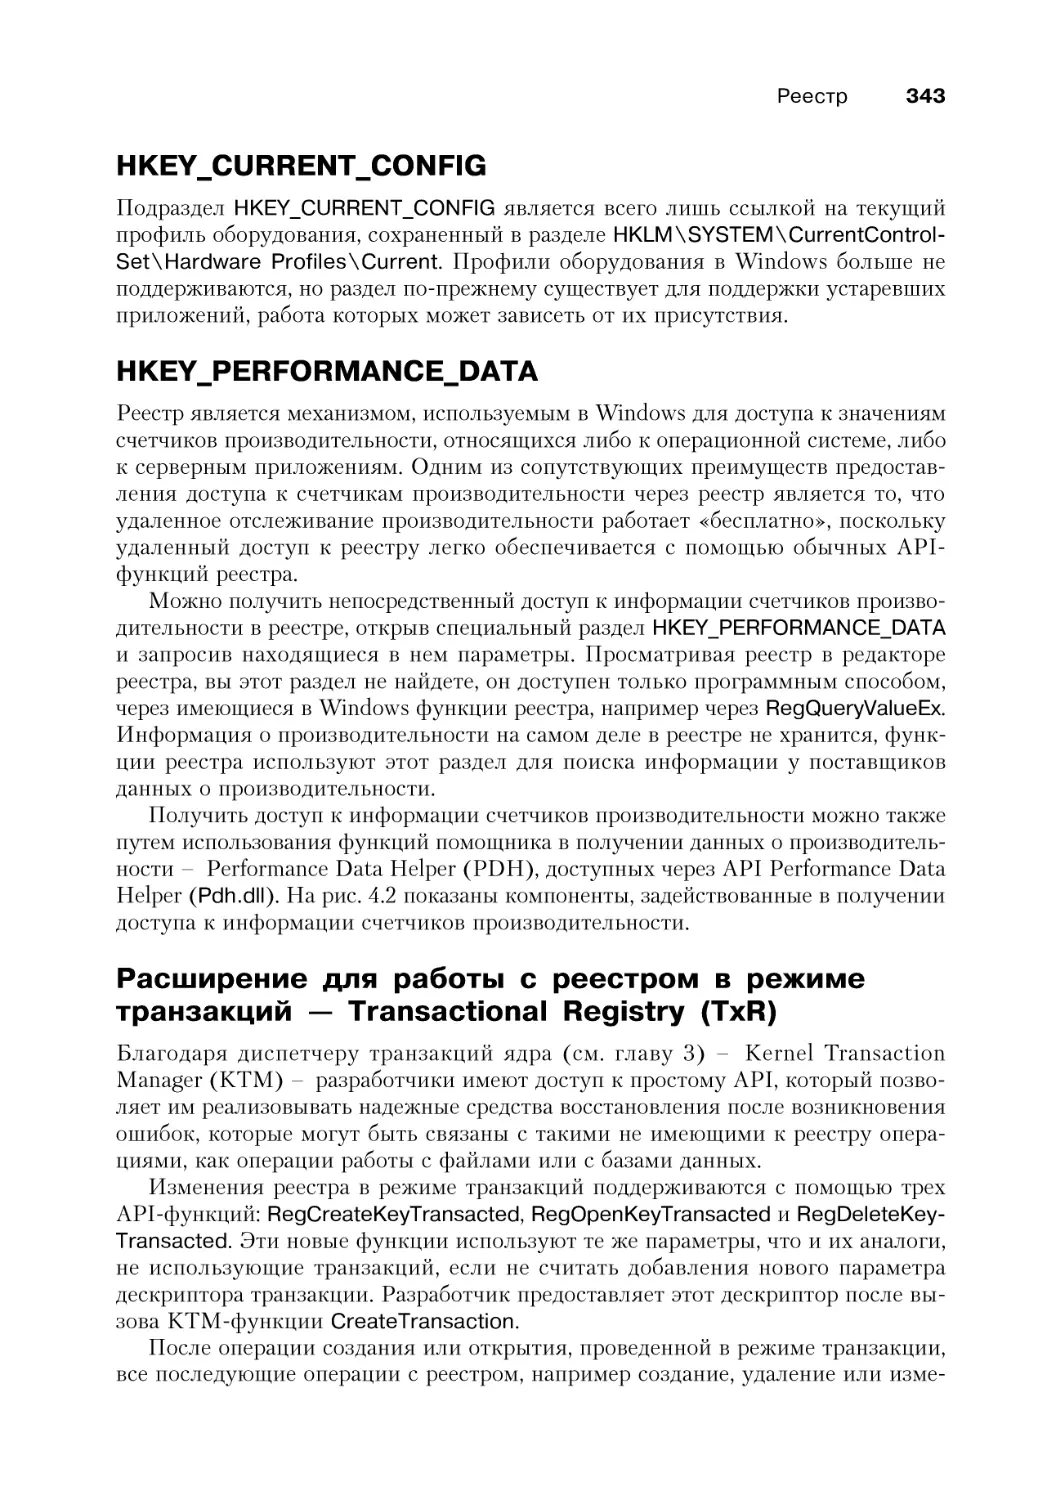 HKEY_CURRENT_CONFIG
HKEY_PERFORMANCE_DATA
Расширение для работы с реестром в режиме транзакций — Transactional Registry (TxR)